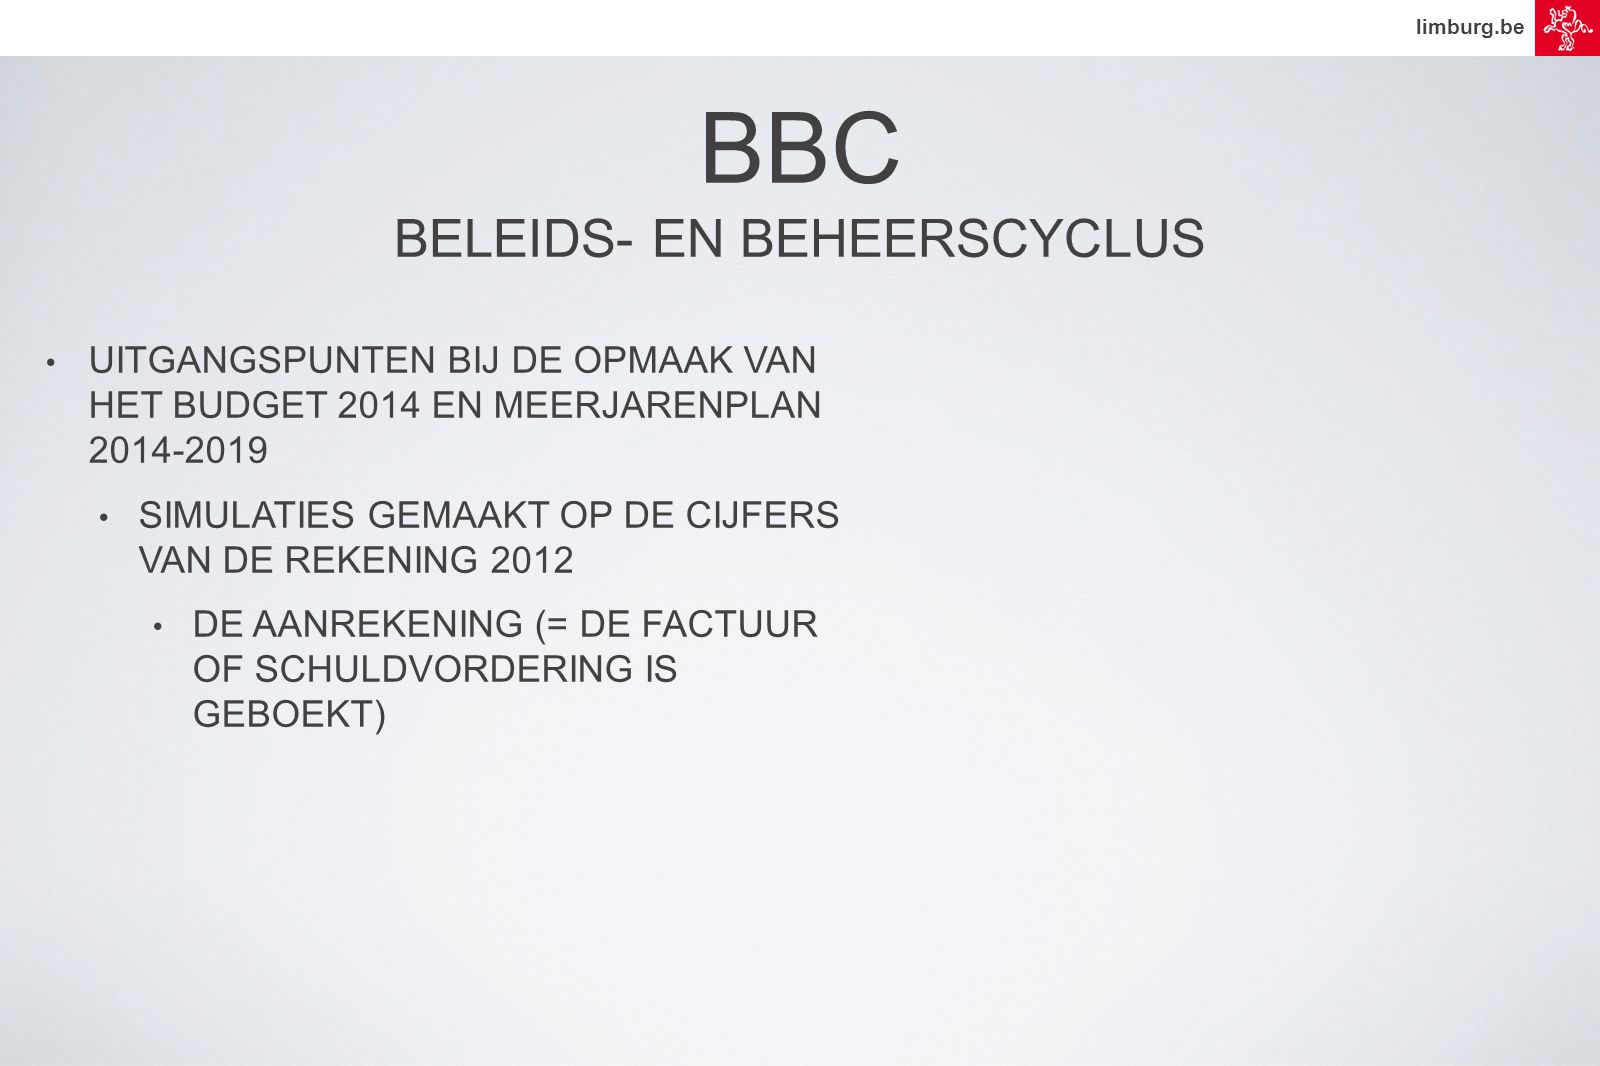 limburg.be • UITGANGSPUNTEN BIJ DE OPMAAK VAN HET BUDGET 2014 EN MEERJARENPLAN • SIMULATIES GEMAAKT OP DE CIJFERS VAN DE REKENING 2012 • DE AANREKENING (= DE FACTUUR OF SCHULDVORDERING IS GEBOEKT) BBC BELEIDS- EN BEHEERSCYCLUS